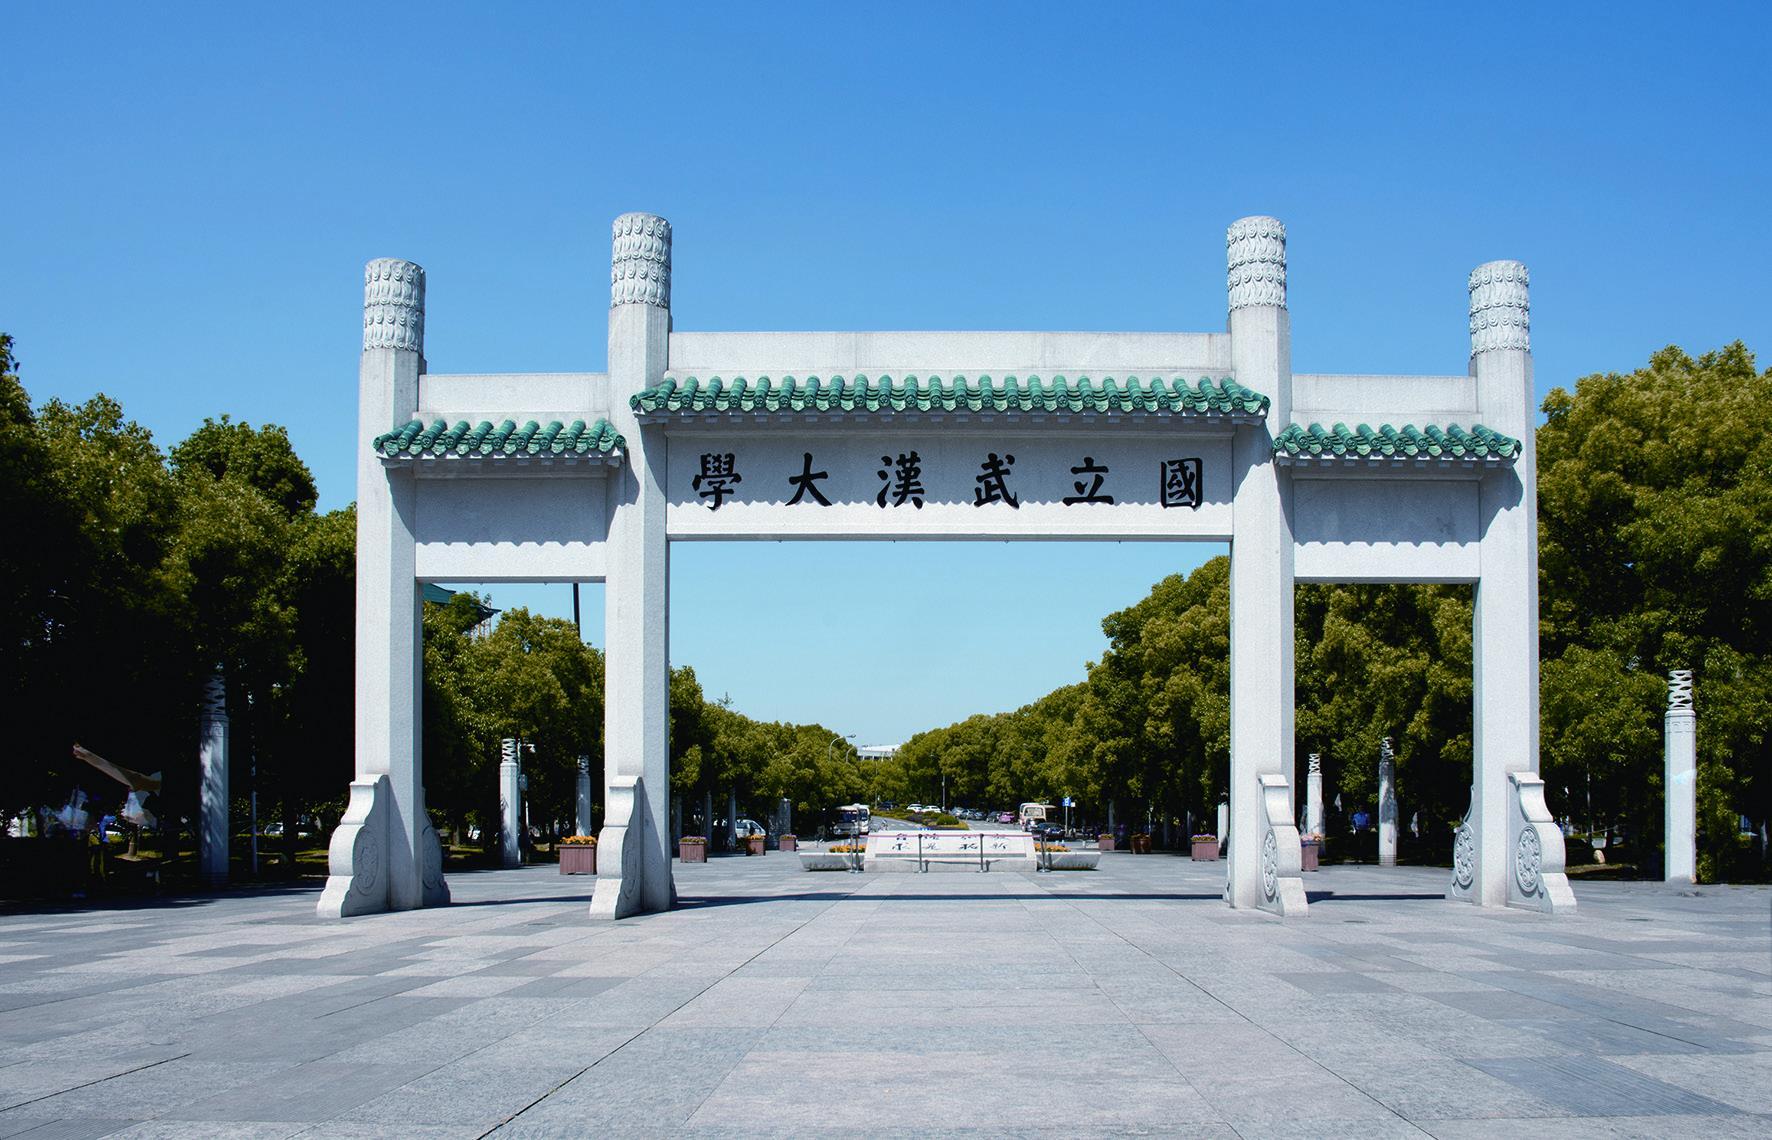 武汉大学的校门牌坊最早可追溯至清末,当时张之洞将自强学堂易名